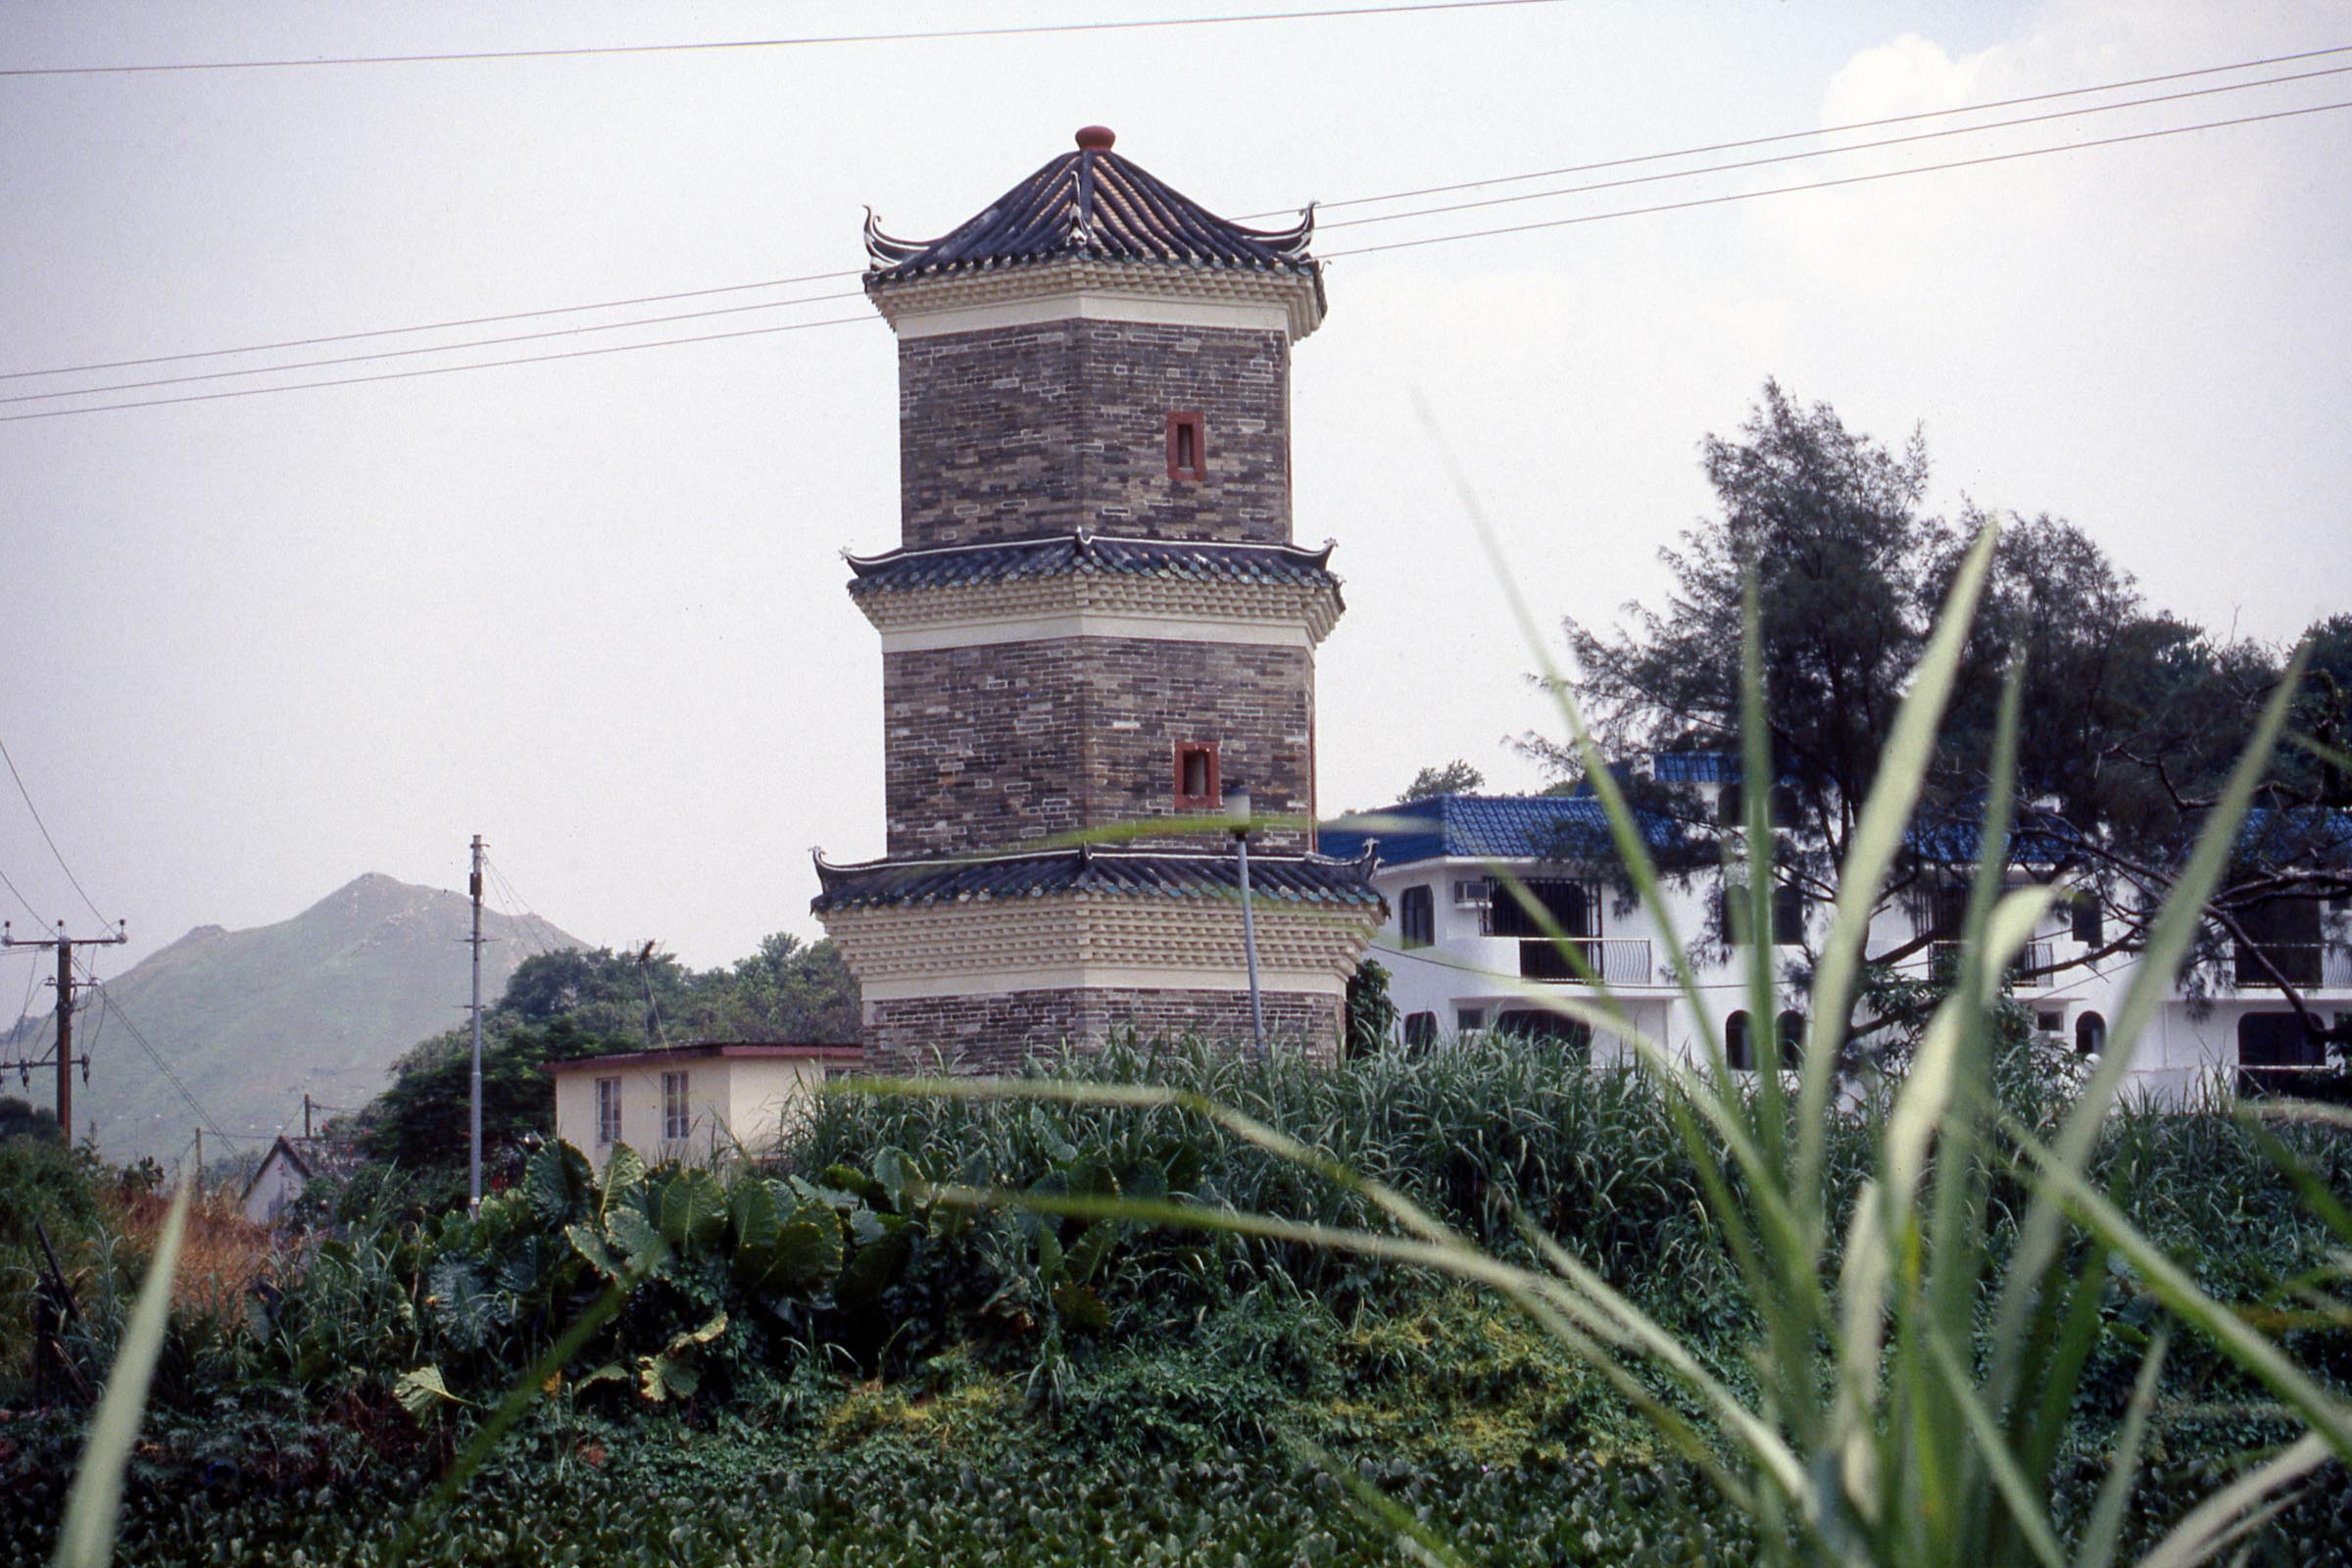 Tsui Sing Lau Pagoda